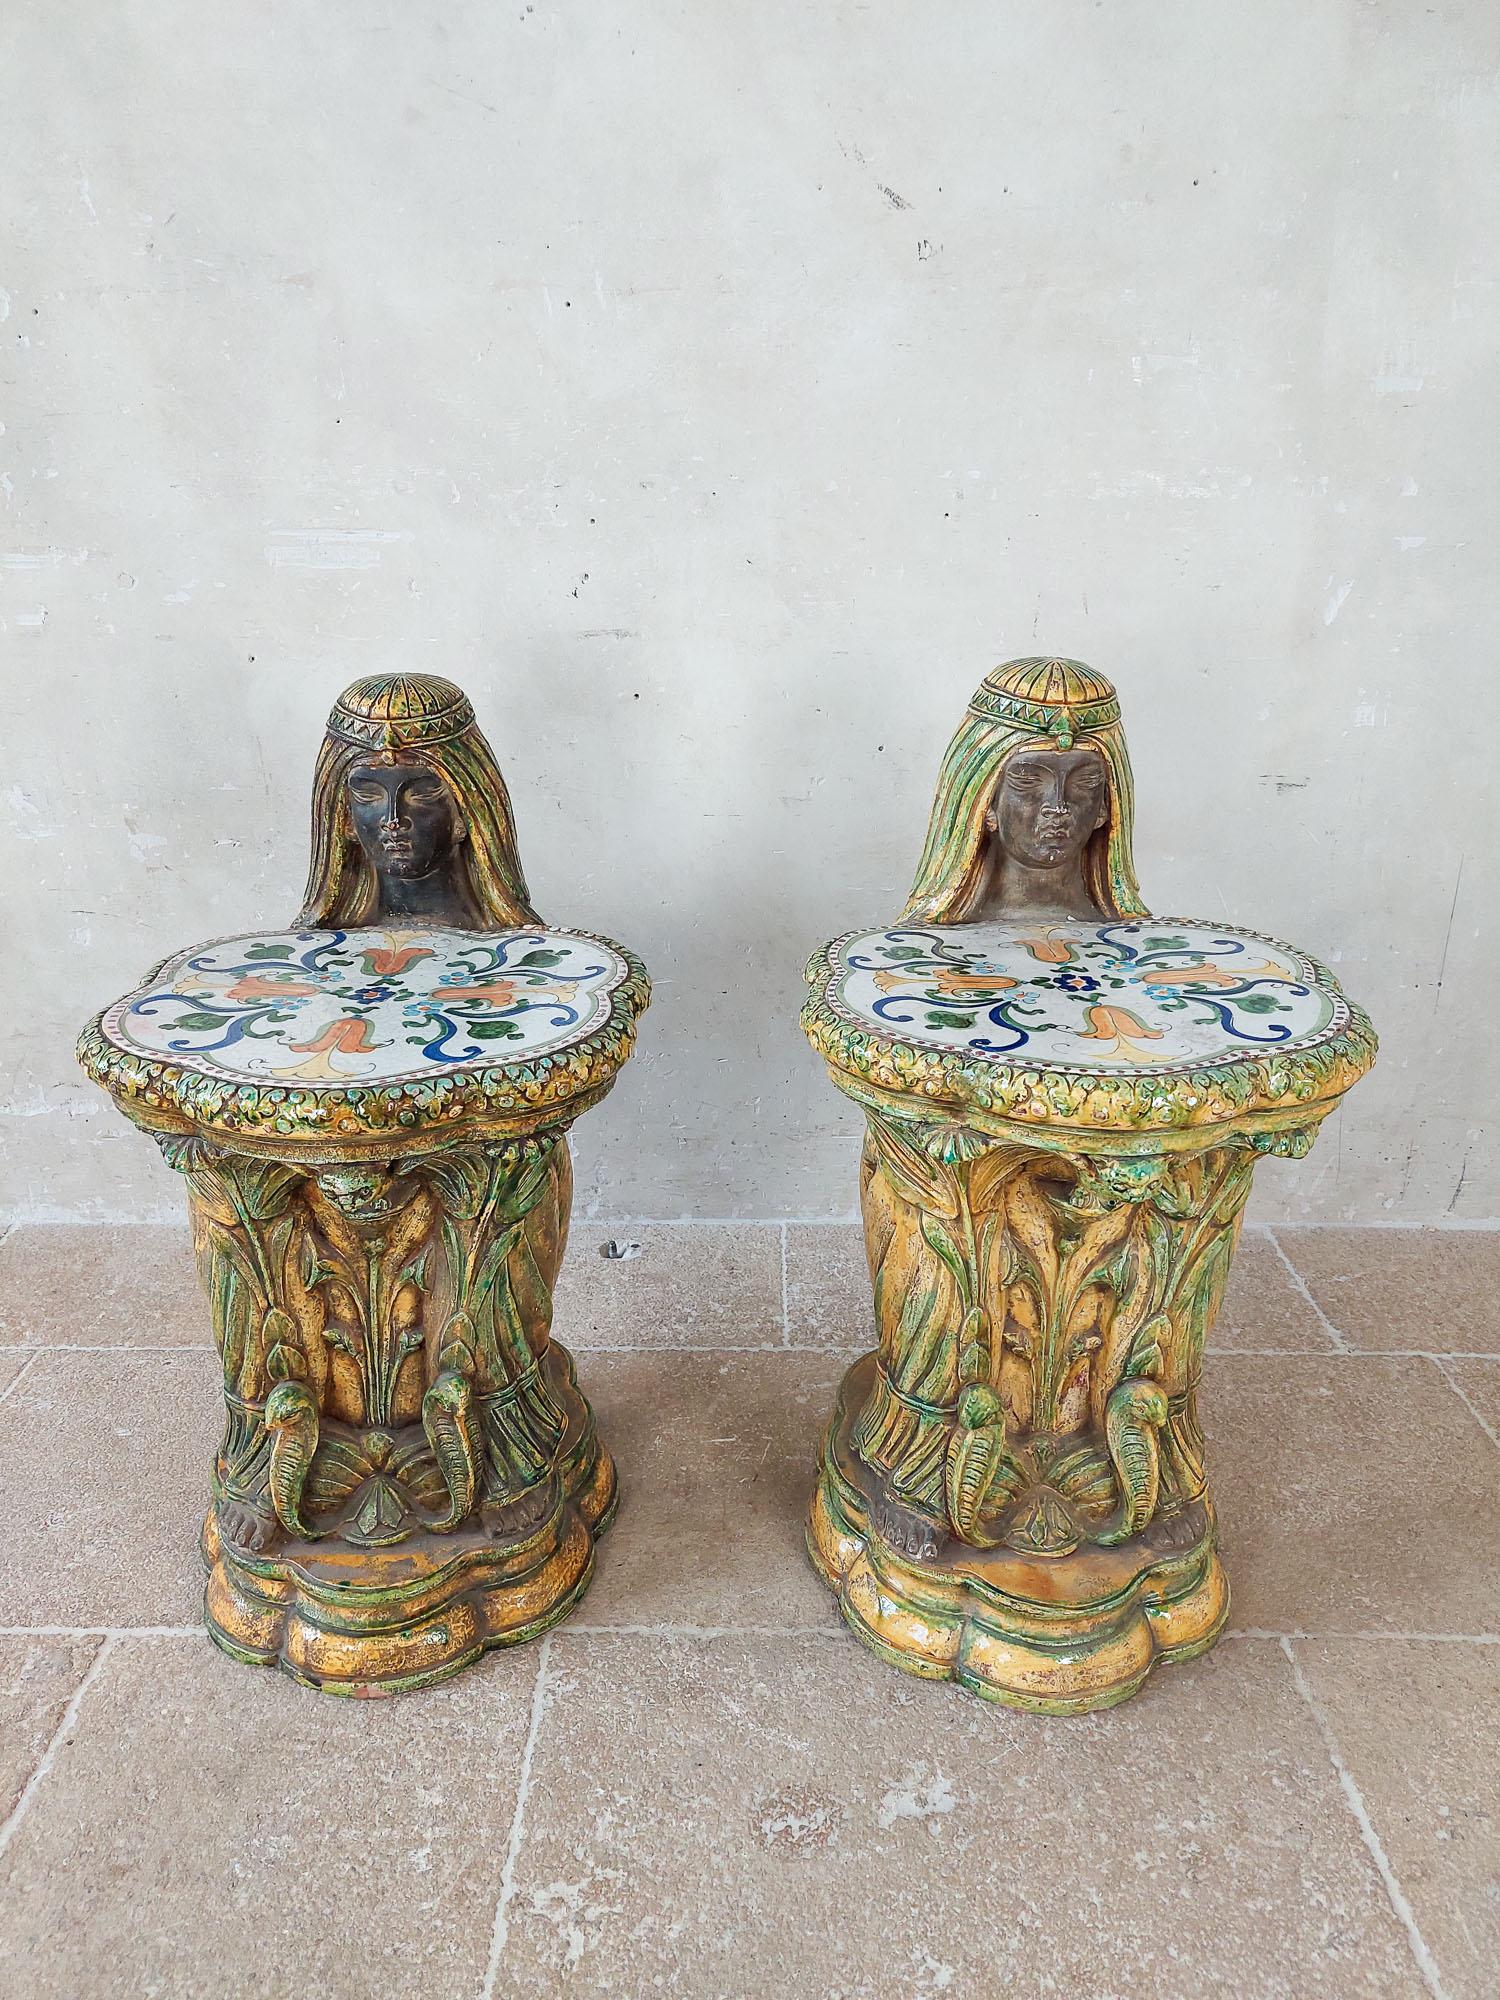 Paire de sièges de jardin en porcelaine Majolica italienne du milieu du siècle, délicatement sculptés en forme de femme égyptienne. Fabriquées par Vietri Ceramics, ces pièces uniques servent non seulement de sièges de jardin élégants, mais aussi de